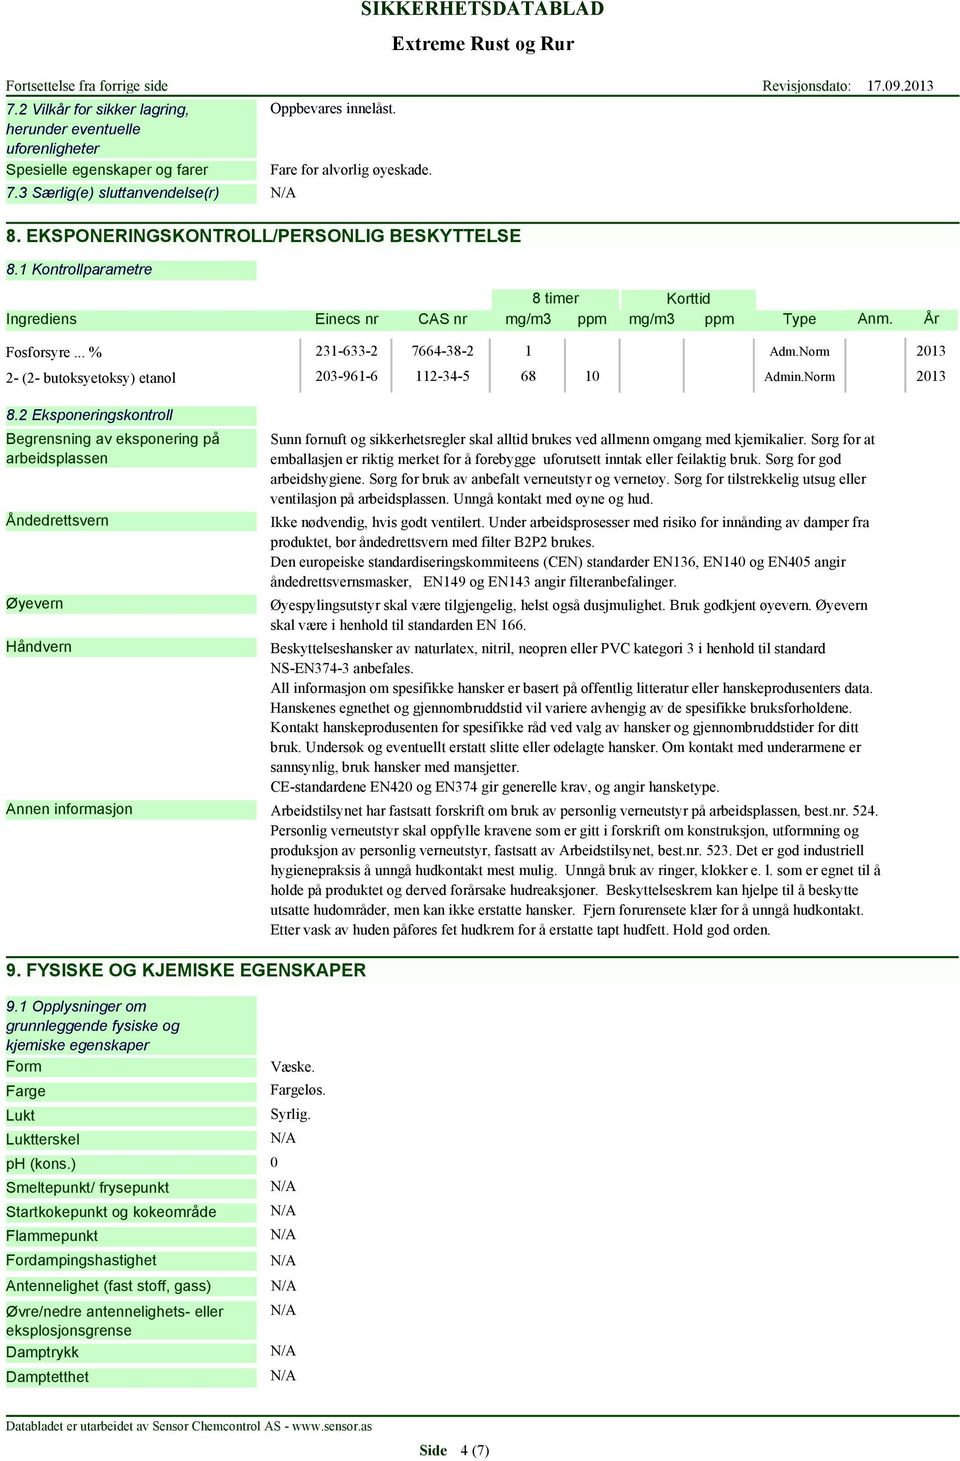 Norm 2013 2- (2- butoksyetoksy) etanol 203-961-6 112-34-5 68 10 Admin.Norm 2013 8.